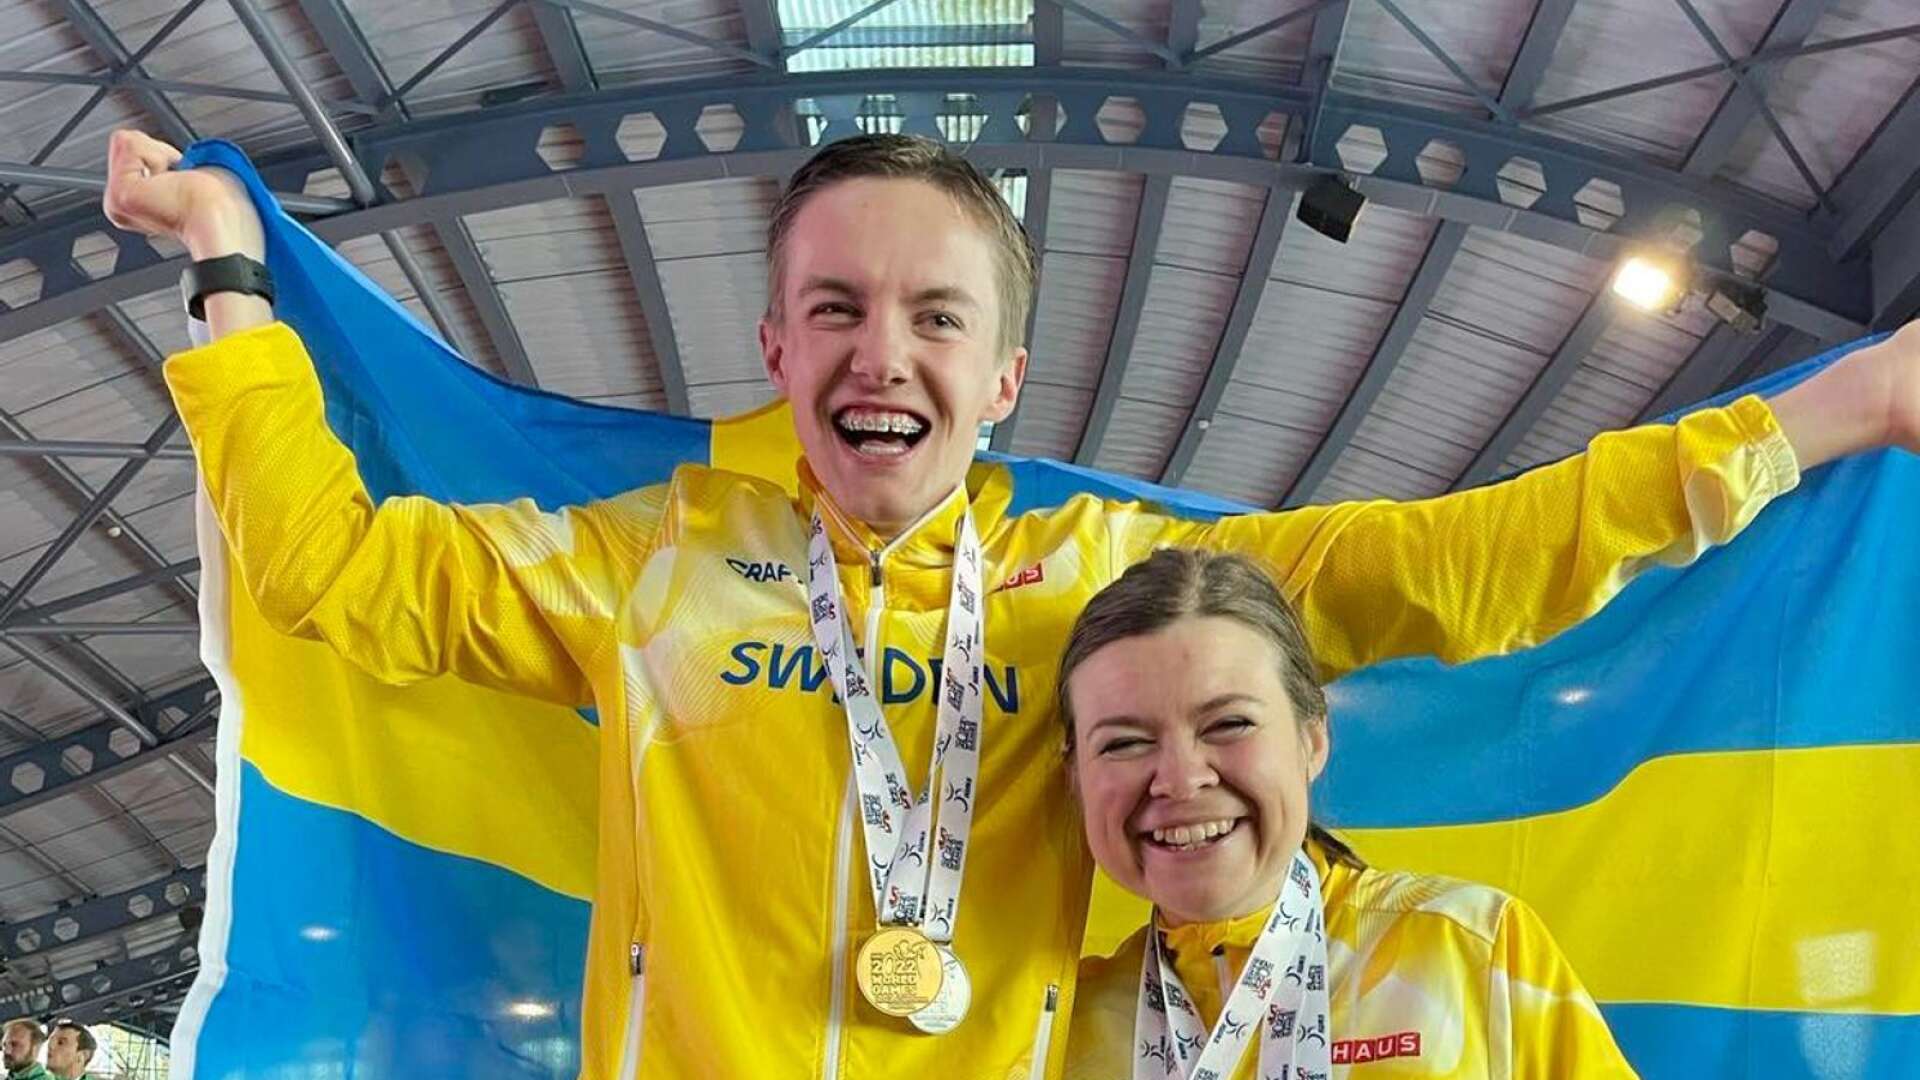 Karlskoga Friidrotts Gustav Tegnelund och Marika Vaihinger – som tillsammans tog fem medaljer varav fyra guld i IWAS World Games i Portugal.